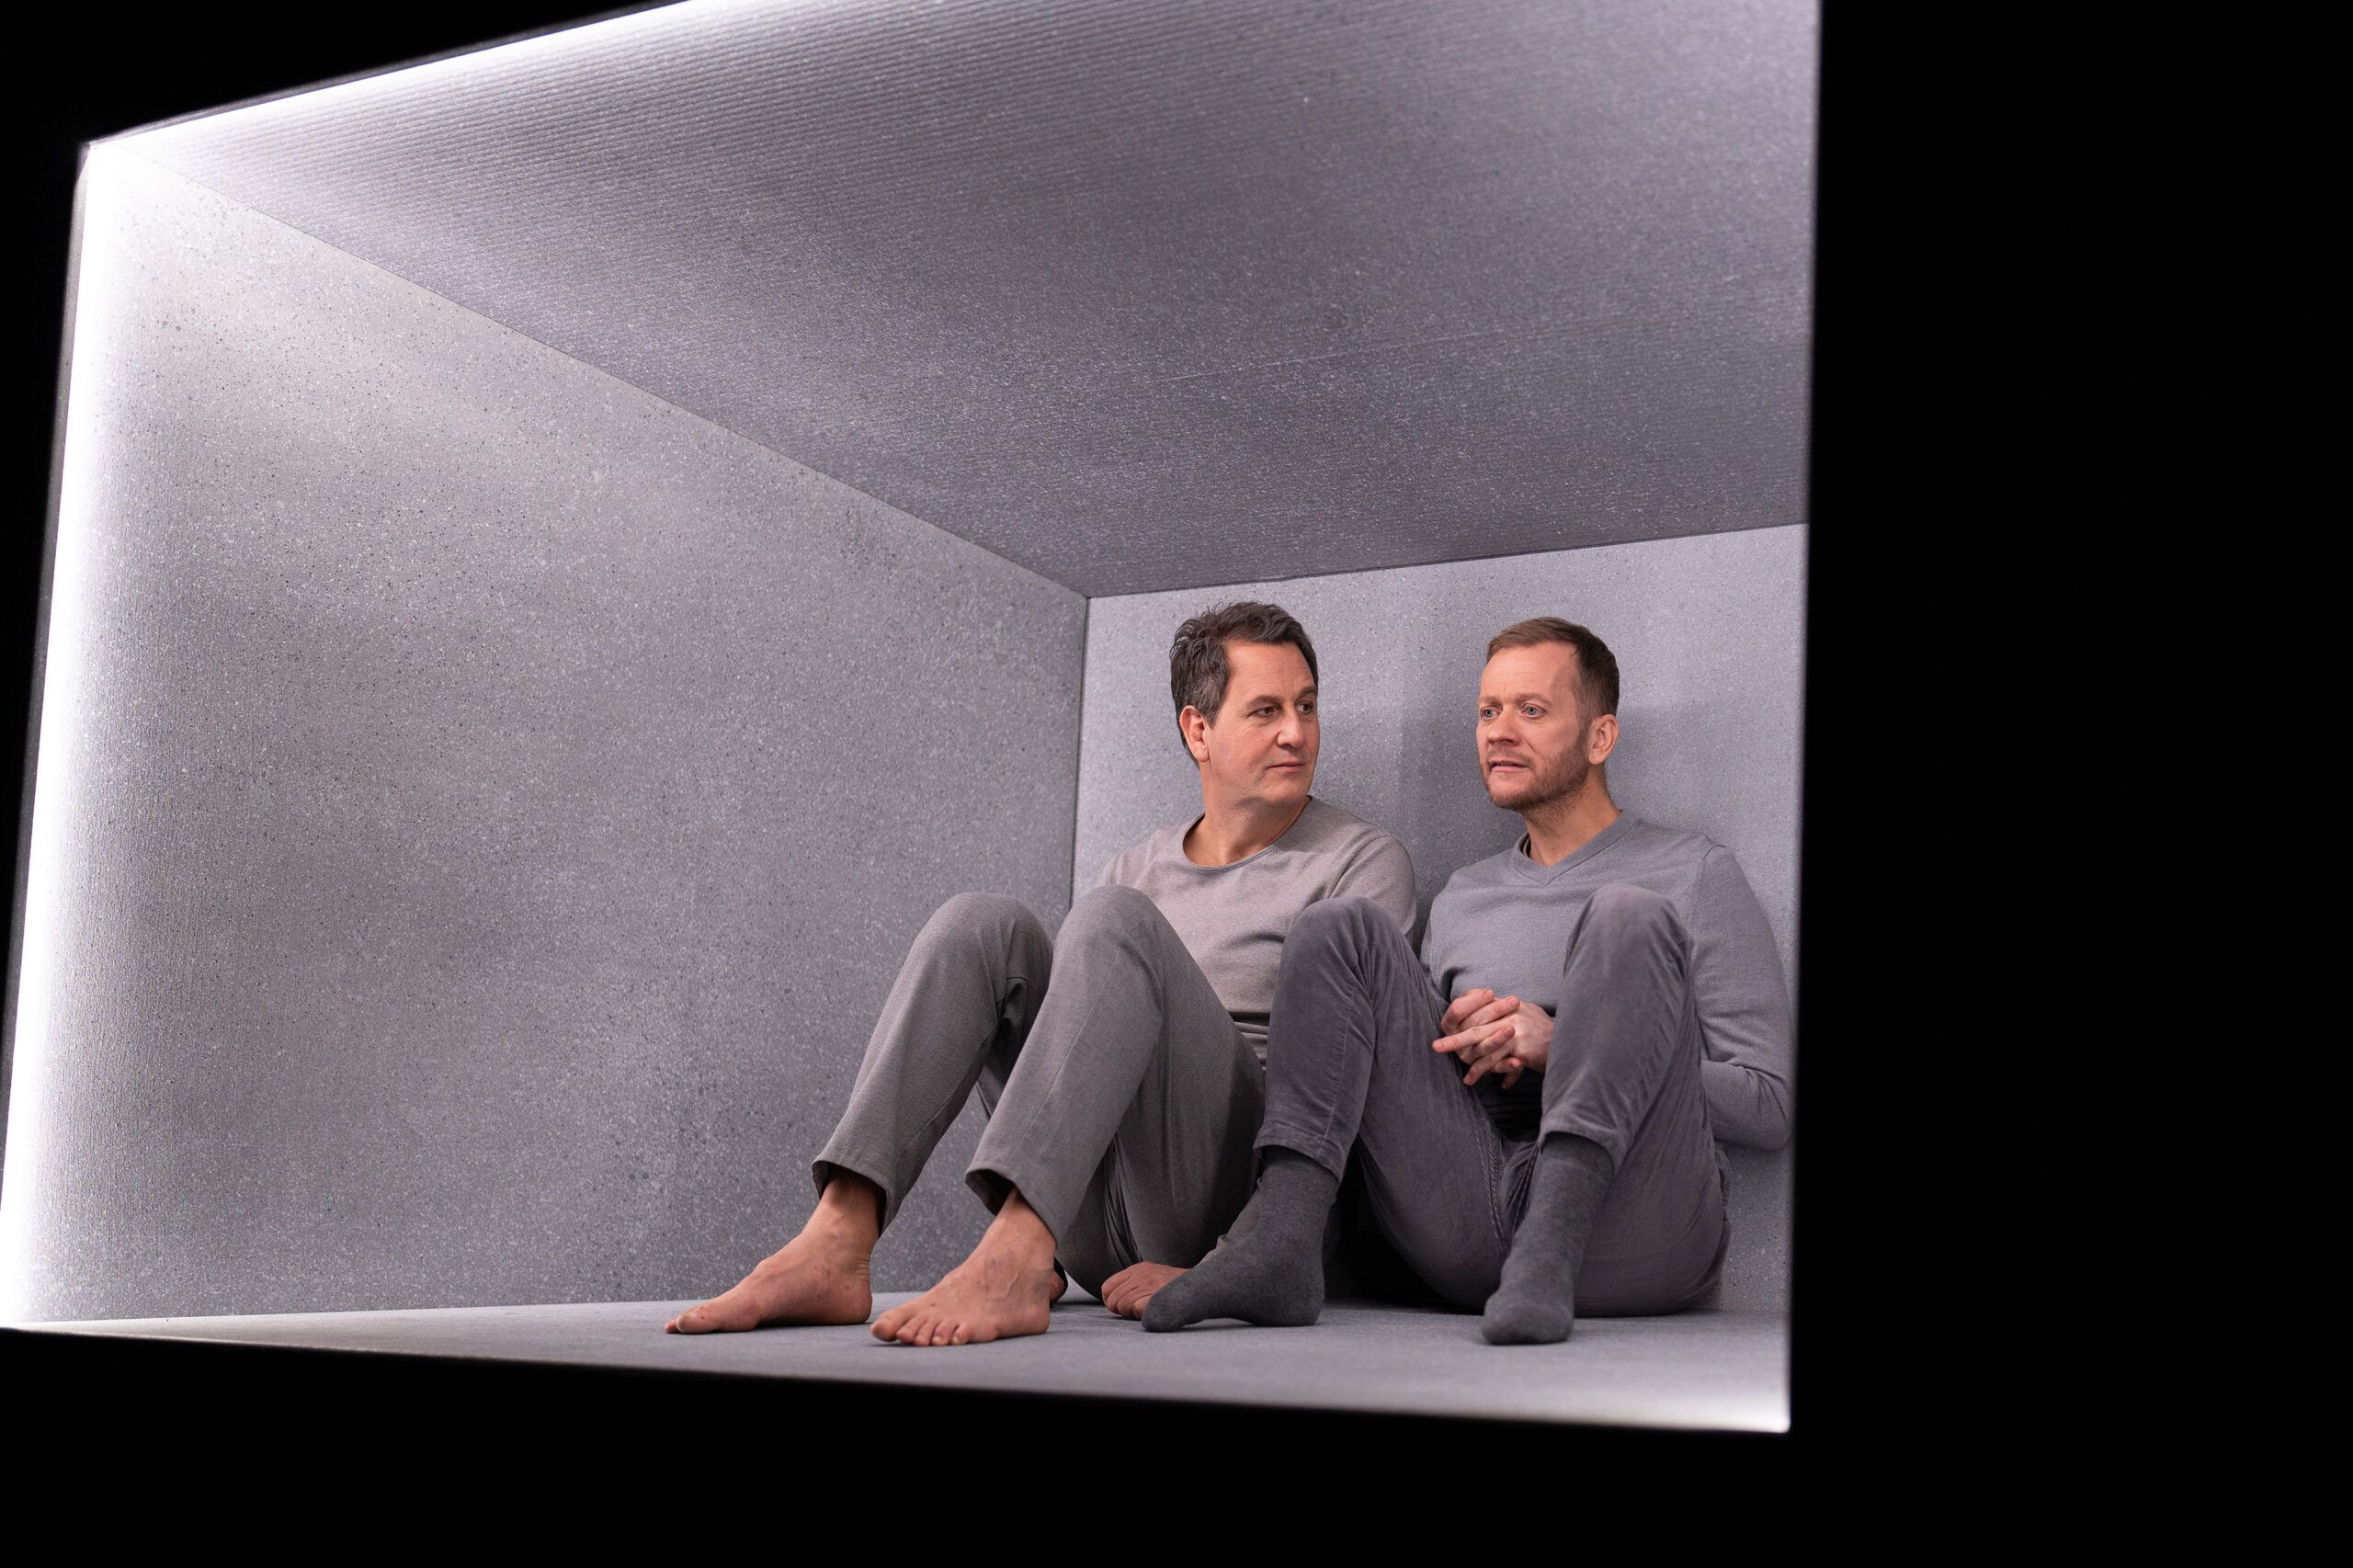 Skuespillere Henrik Rafaelsen og Morten Espeland som karakterene Den eine og Den andre i Eg er vinden. De er ikledd grå klær, og sitter i en grå, lysende, svevende boks.